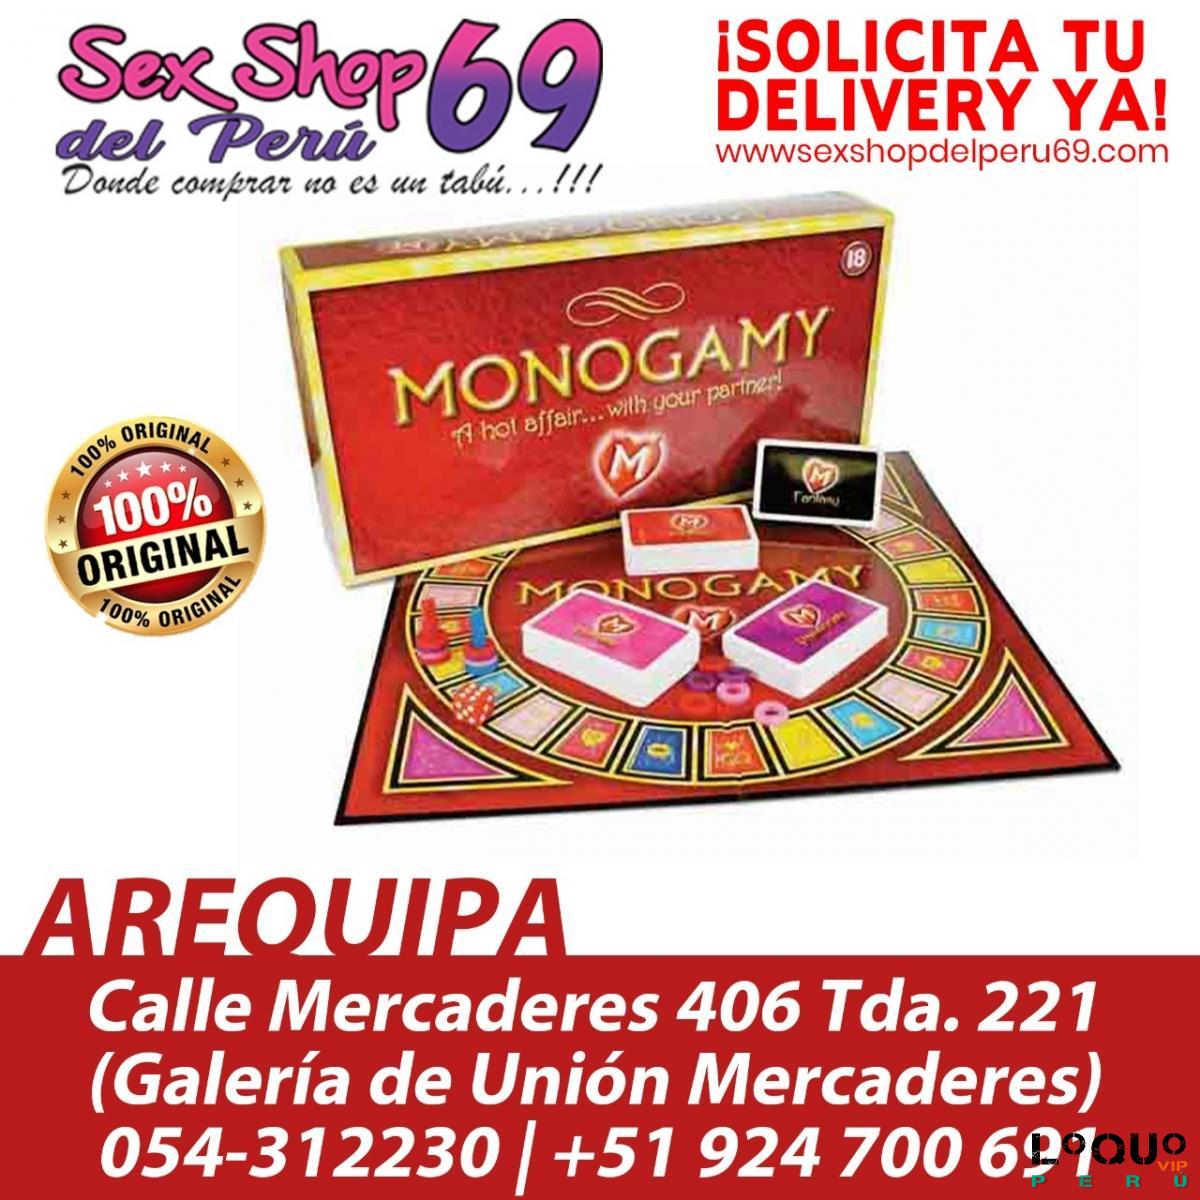 Sex Shop Arequipa: MONOGAMY DIVERTIDO JUEGO DEL PLACER EN PAREJA **